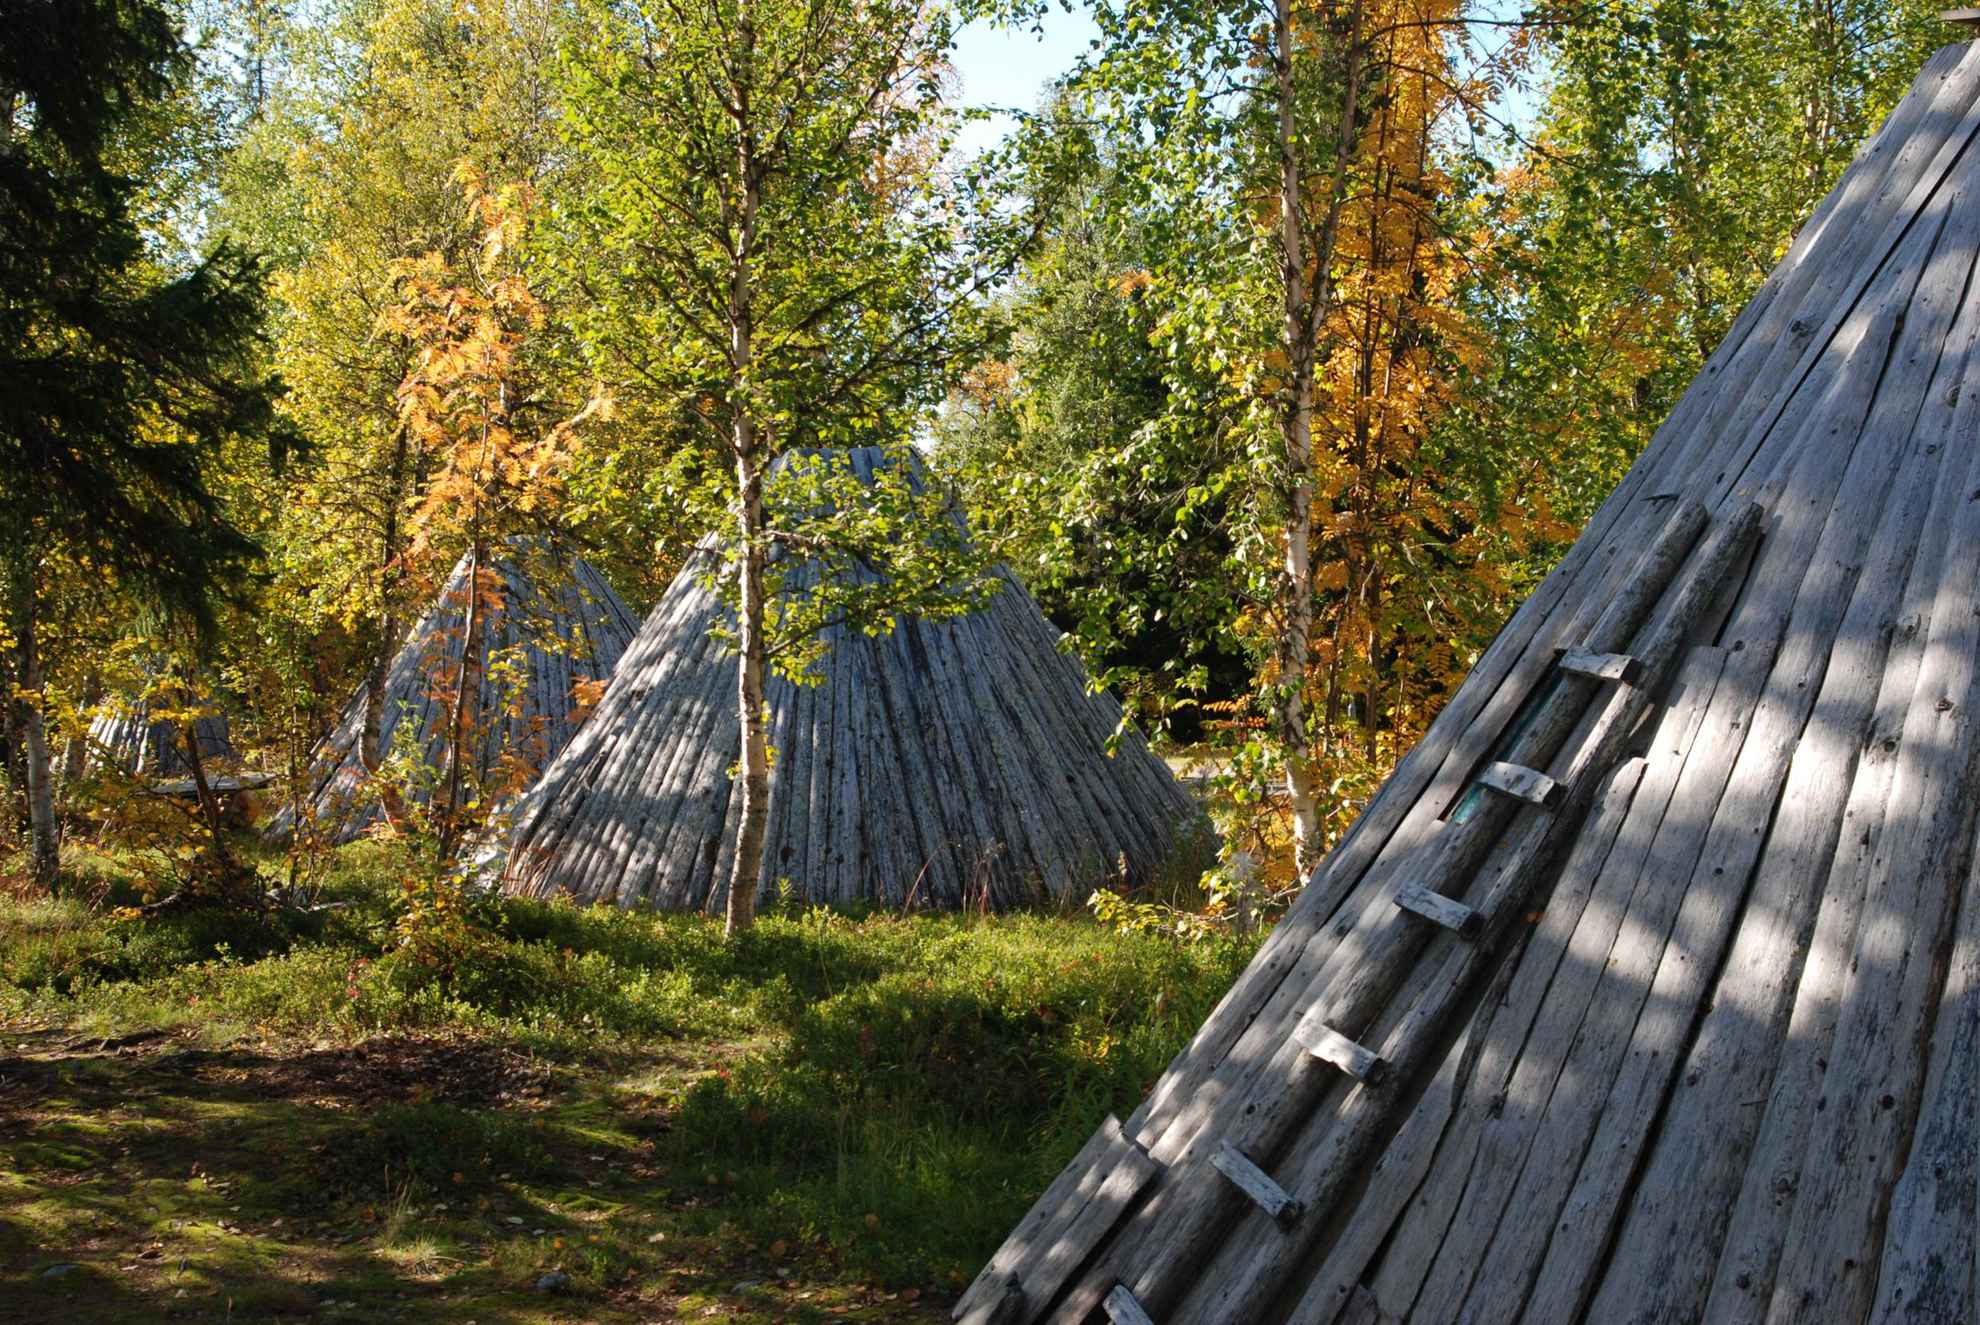 Drie houten hutten omgeven door bomen met herfstkleuren. De dichtstbijzijnde hut heeft een houten ladder aan de buitenkant.